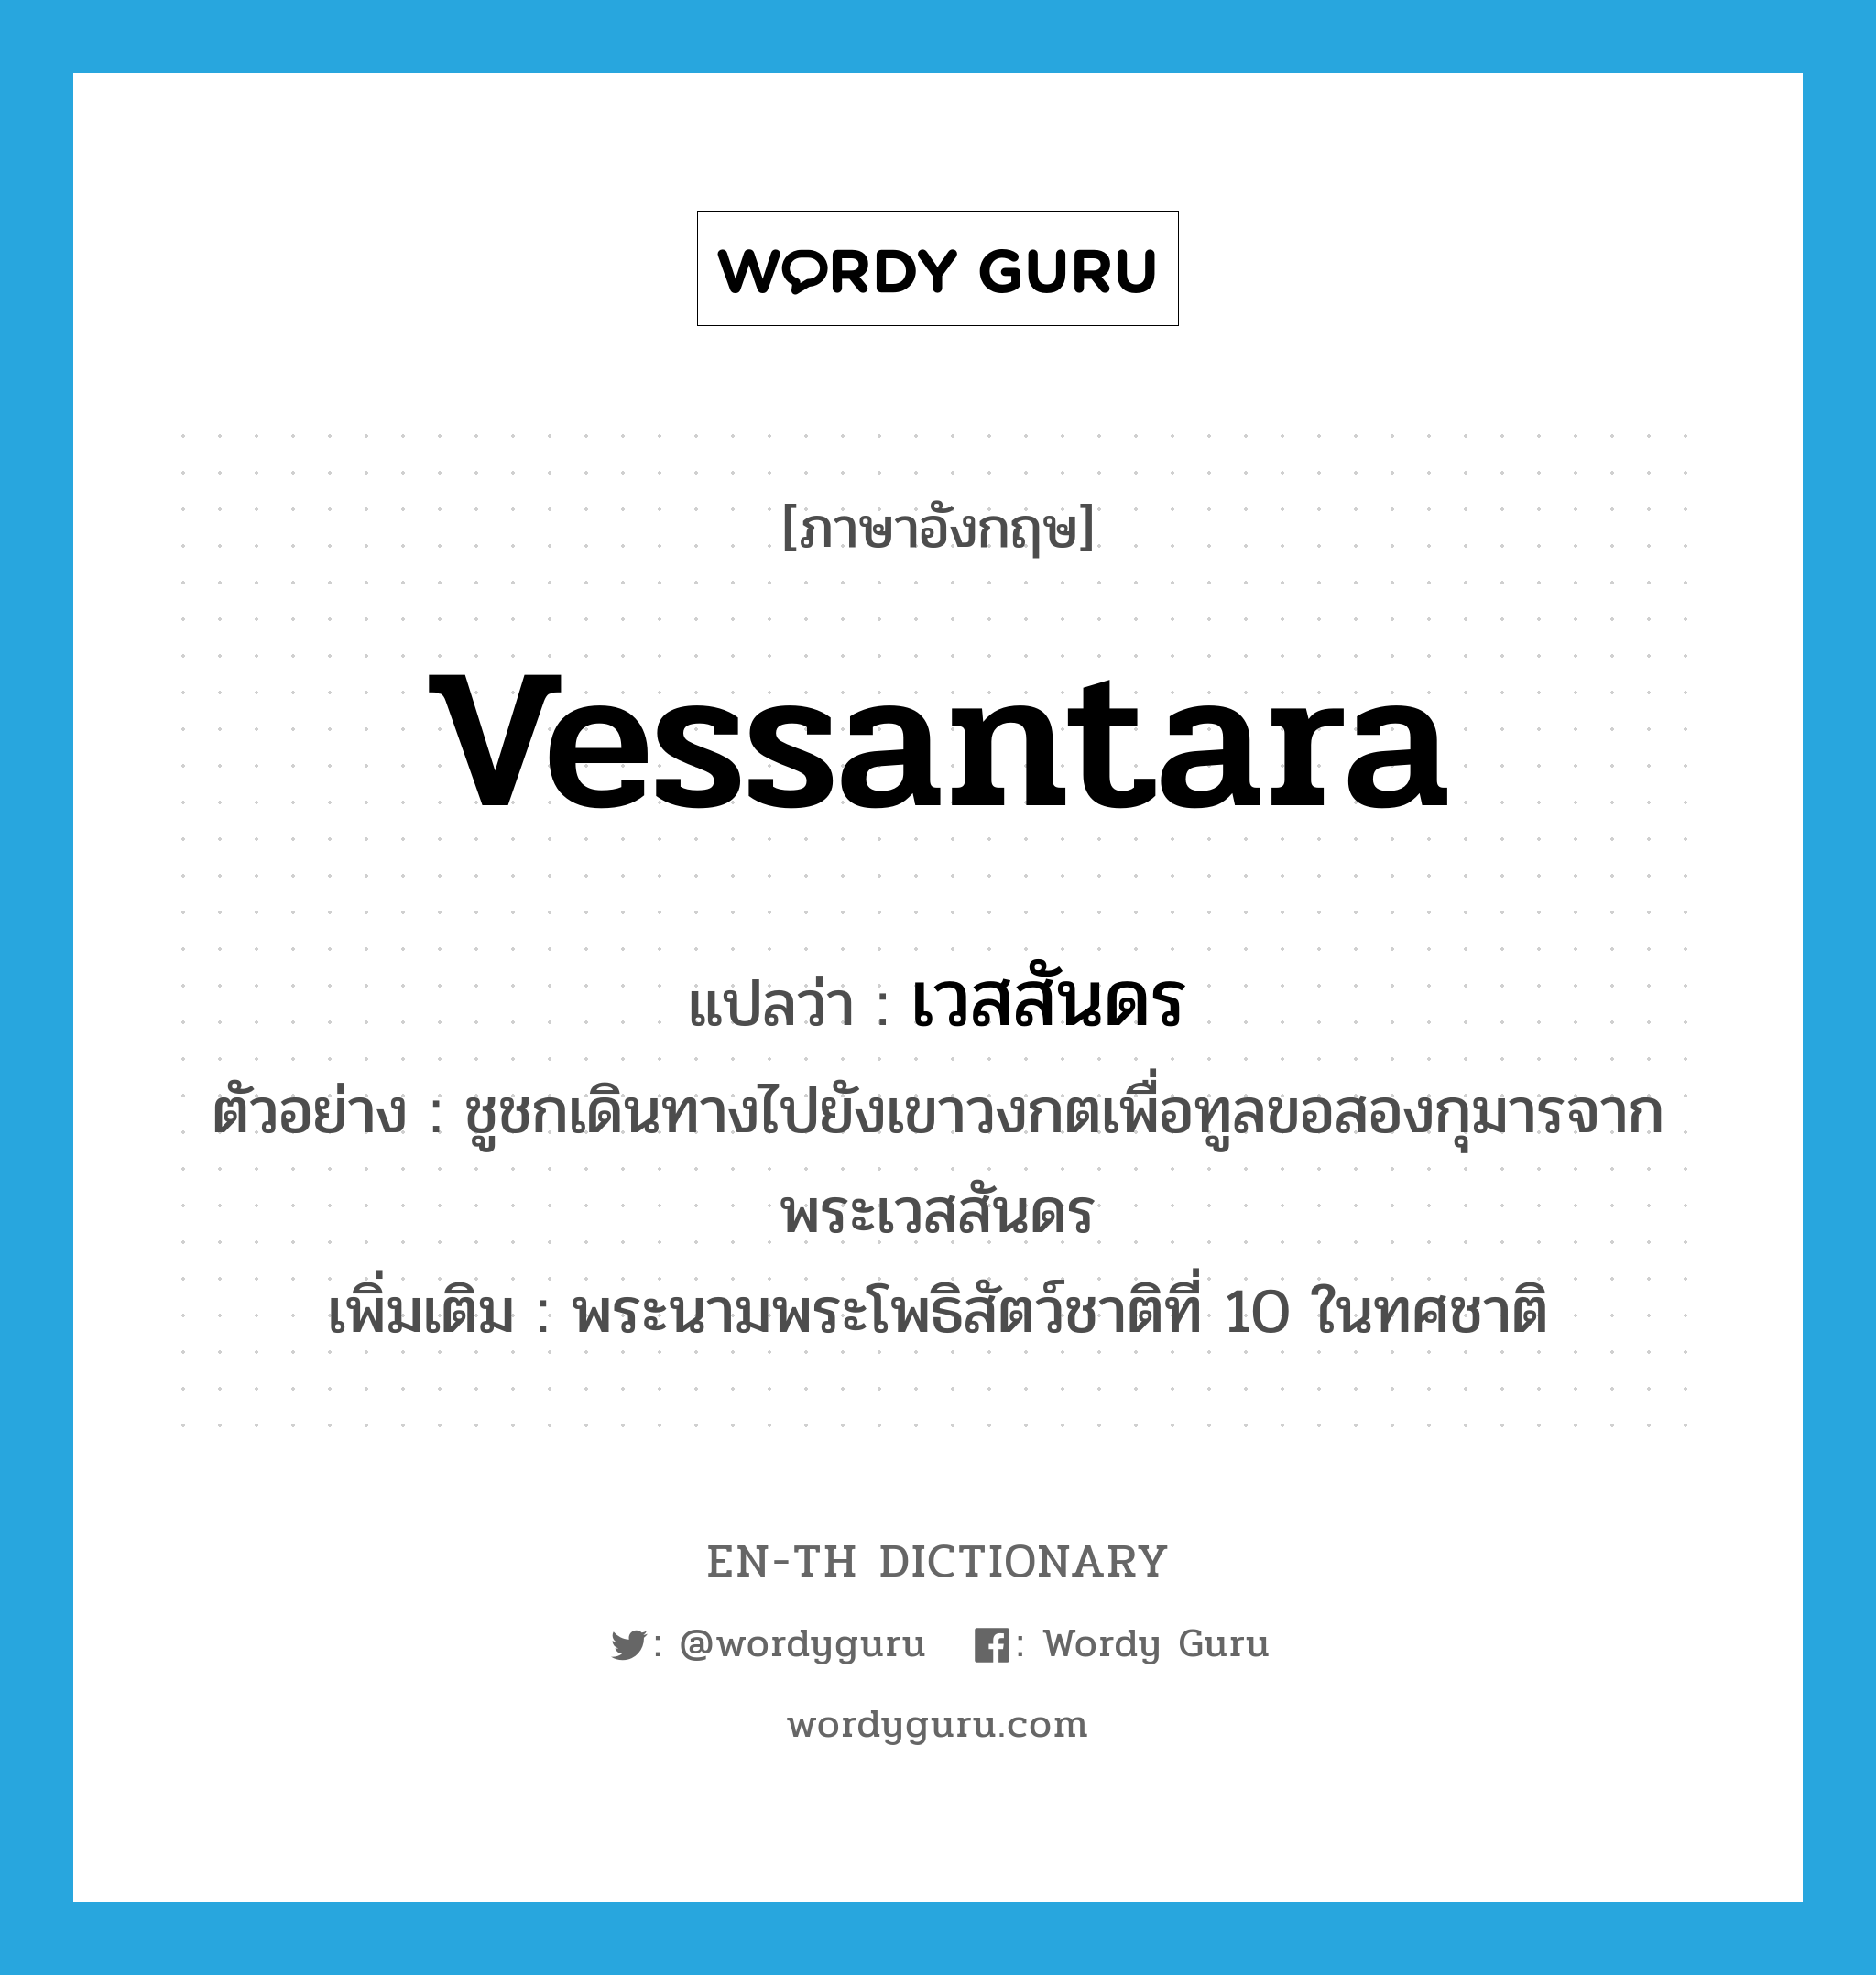 Vessantara แปลว่า?, คำศัพท์ภาษาอังกฤษ Vessantara แปลว่า เวสสันดร ประเภท N ตัวอย่าง ชูชกเดินทางไปยังเขาวงกตเพื่อทูลขอสองกุมารจากพระเวสสันดร เพิ่มเติม พระนามพระโพธิสัตว์ชาติที่ 10 ในทศชาติ หมวด N